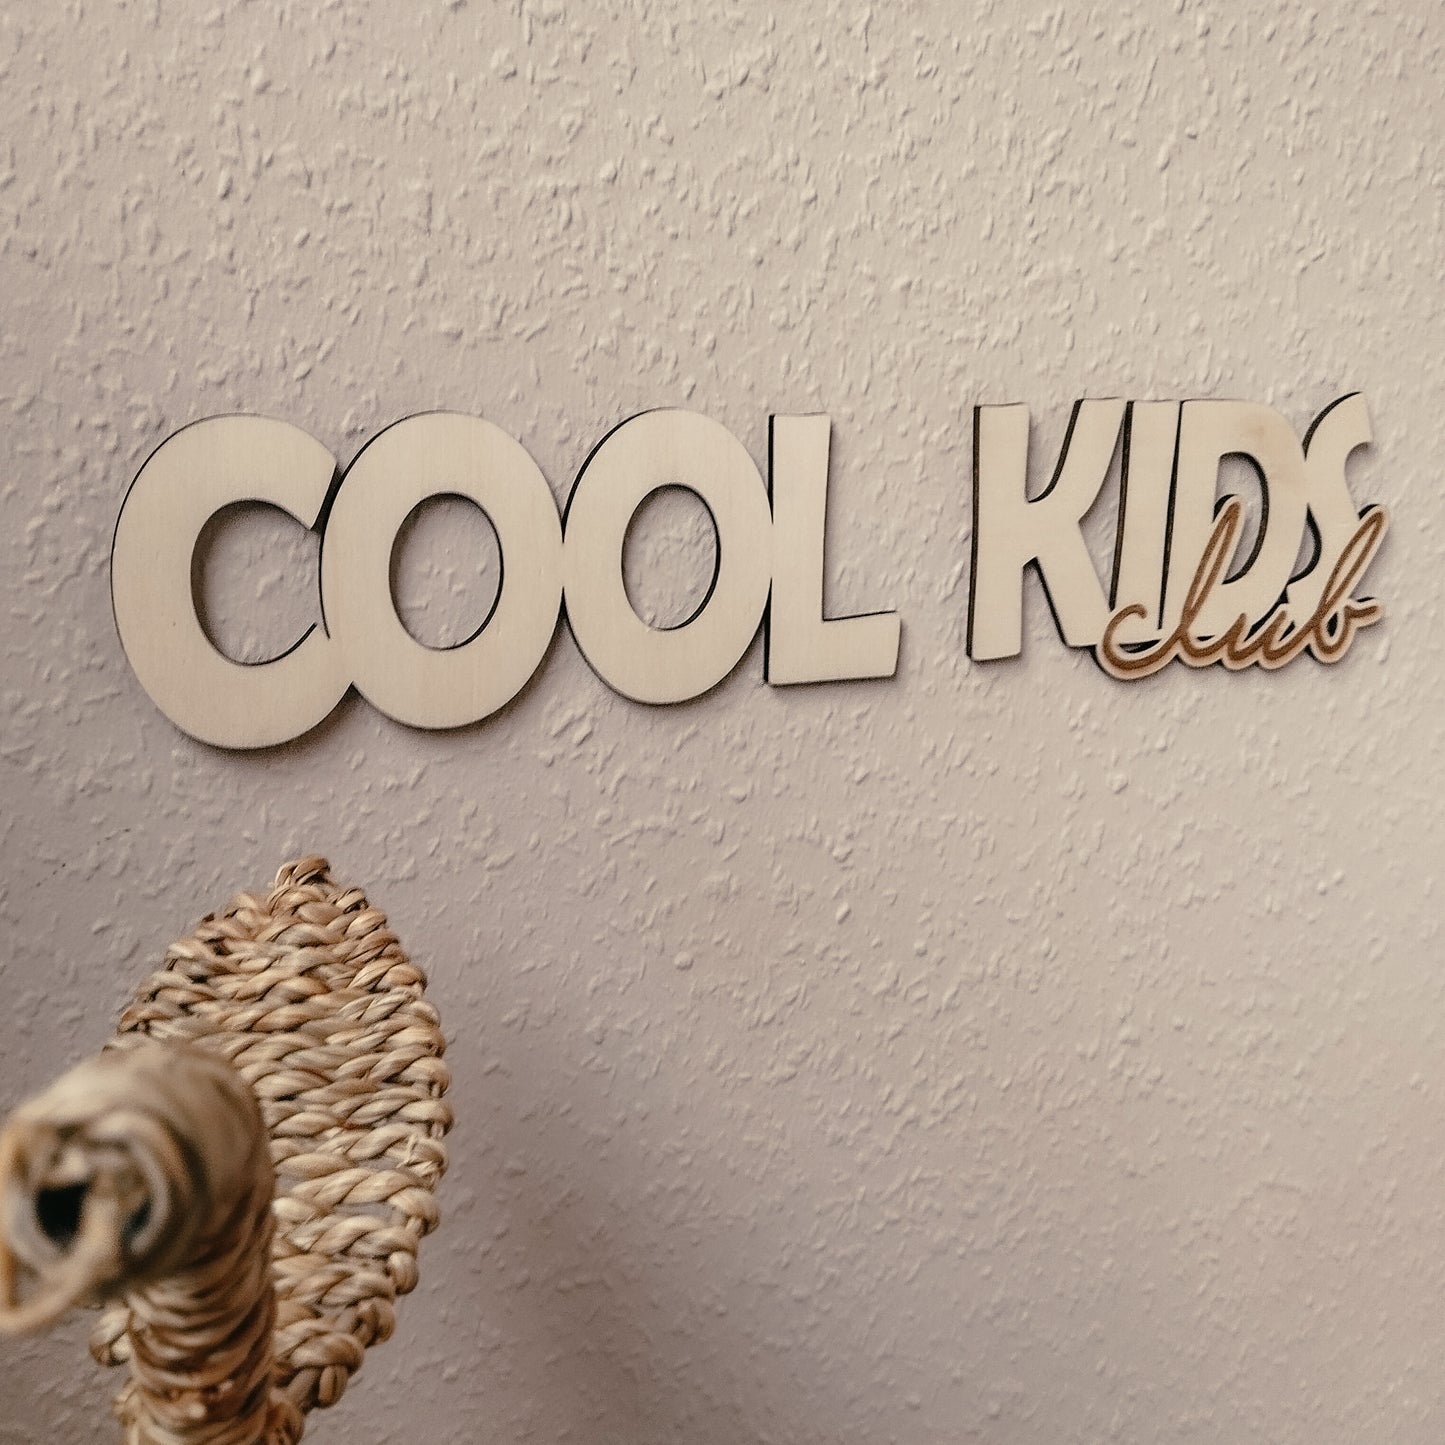 Cool Kids Club